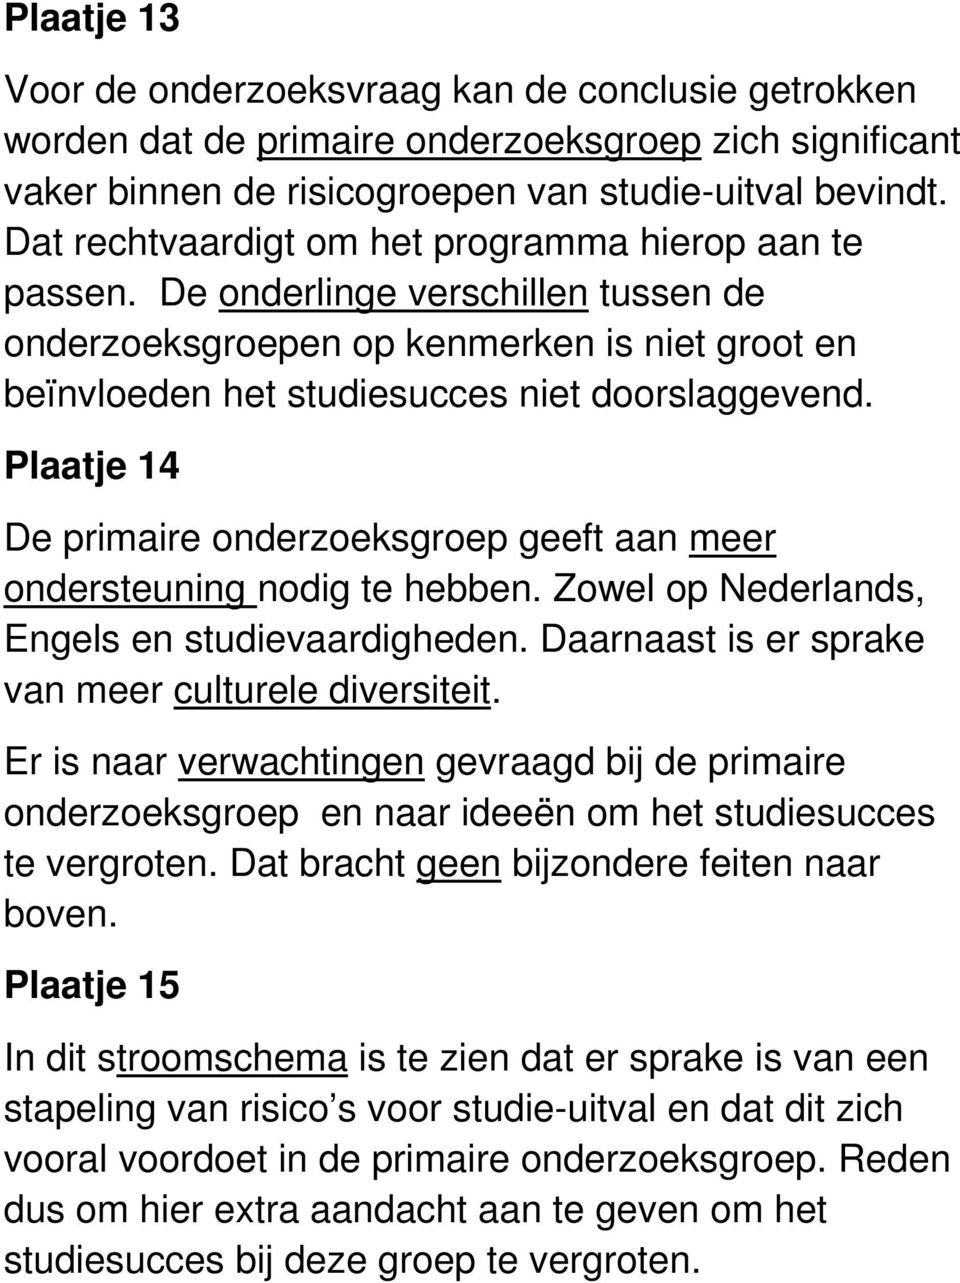 Plaatje 14 De primaire onderzoeksgroep geeft aan meer ondersteuning nodig te hebben. Zowel op Nederlands, Engels en studievaardigheden. Daarnaast is er sprake van meer culturele diversiteit.